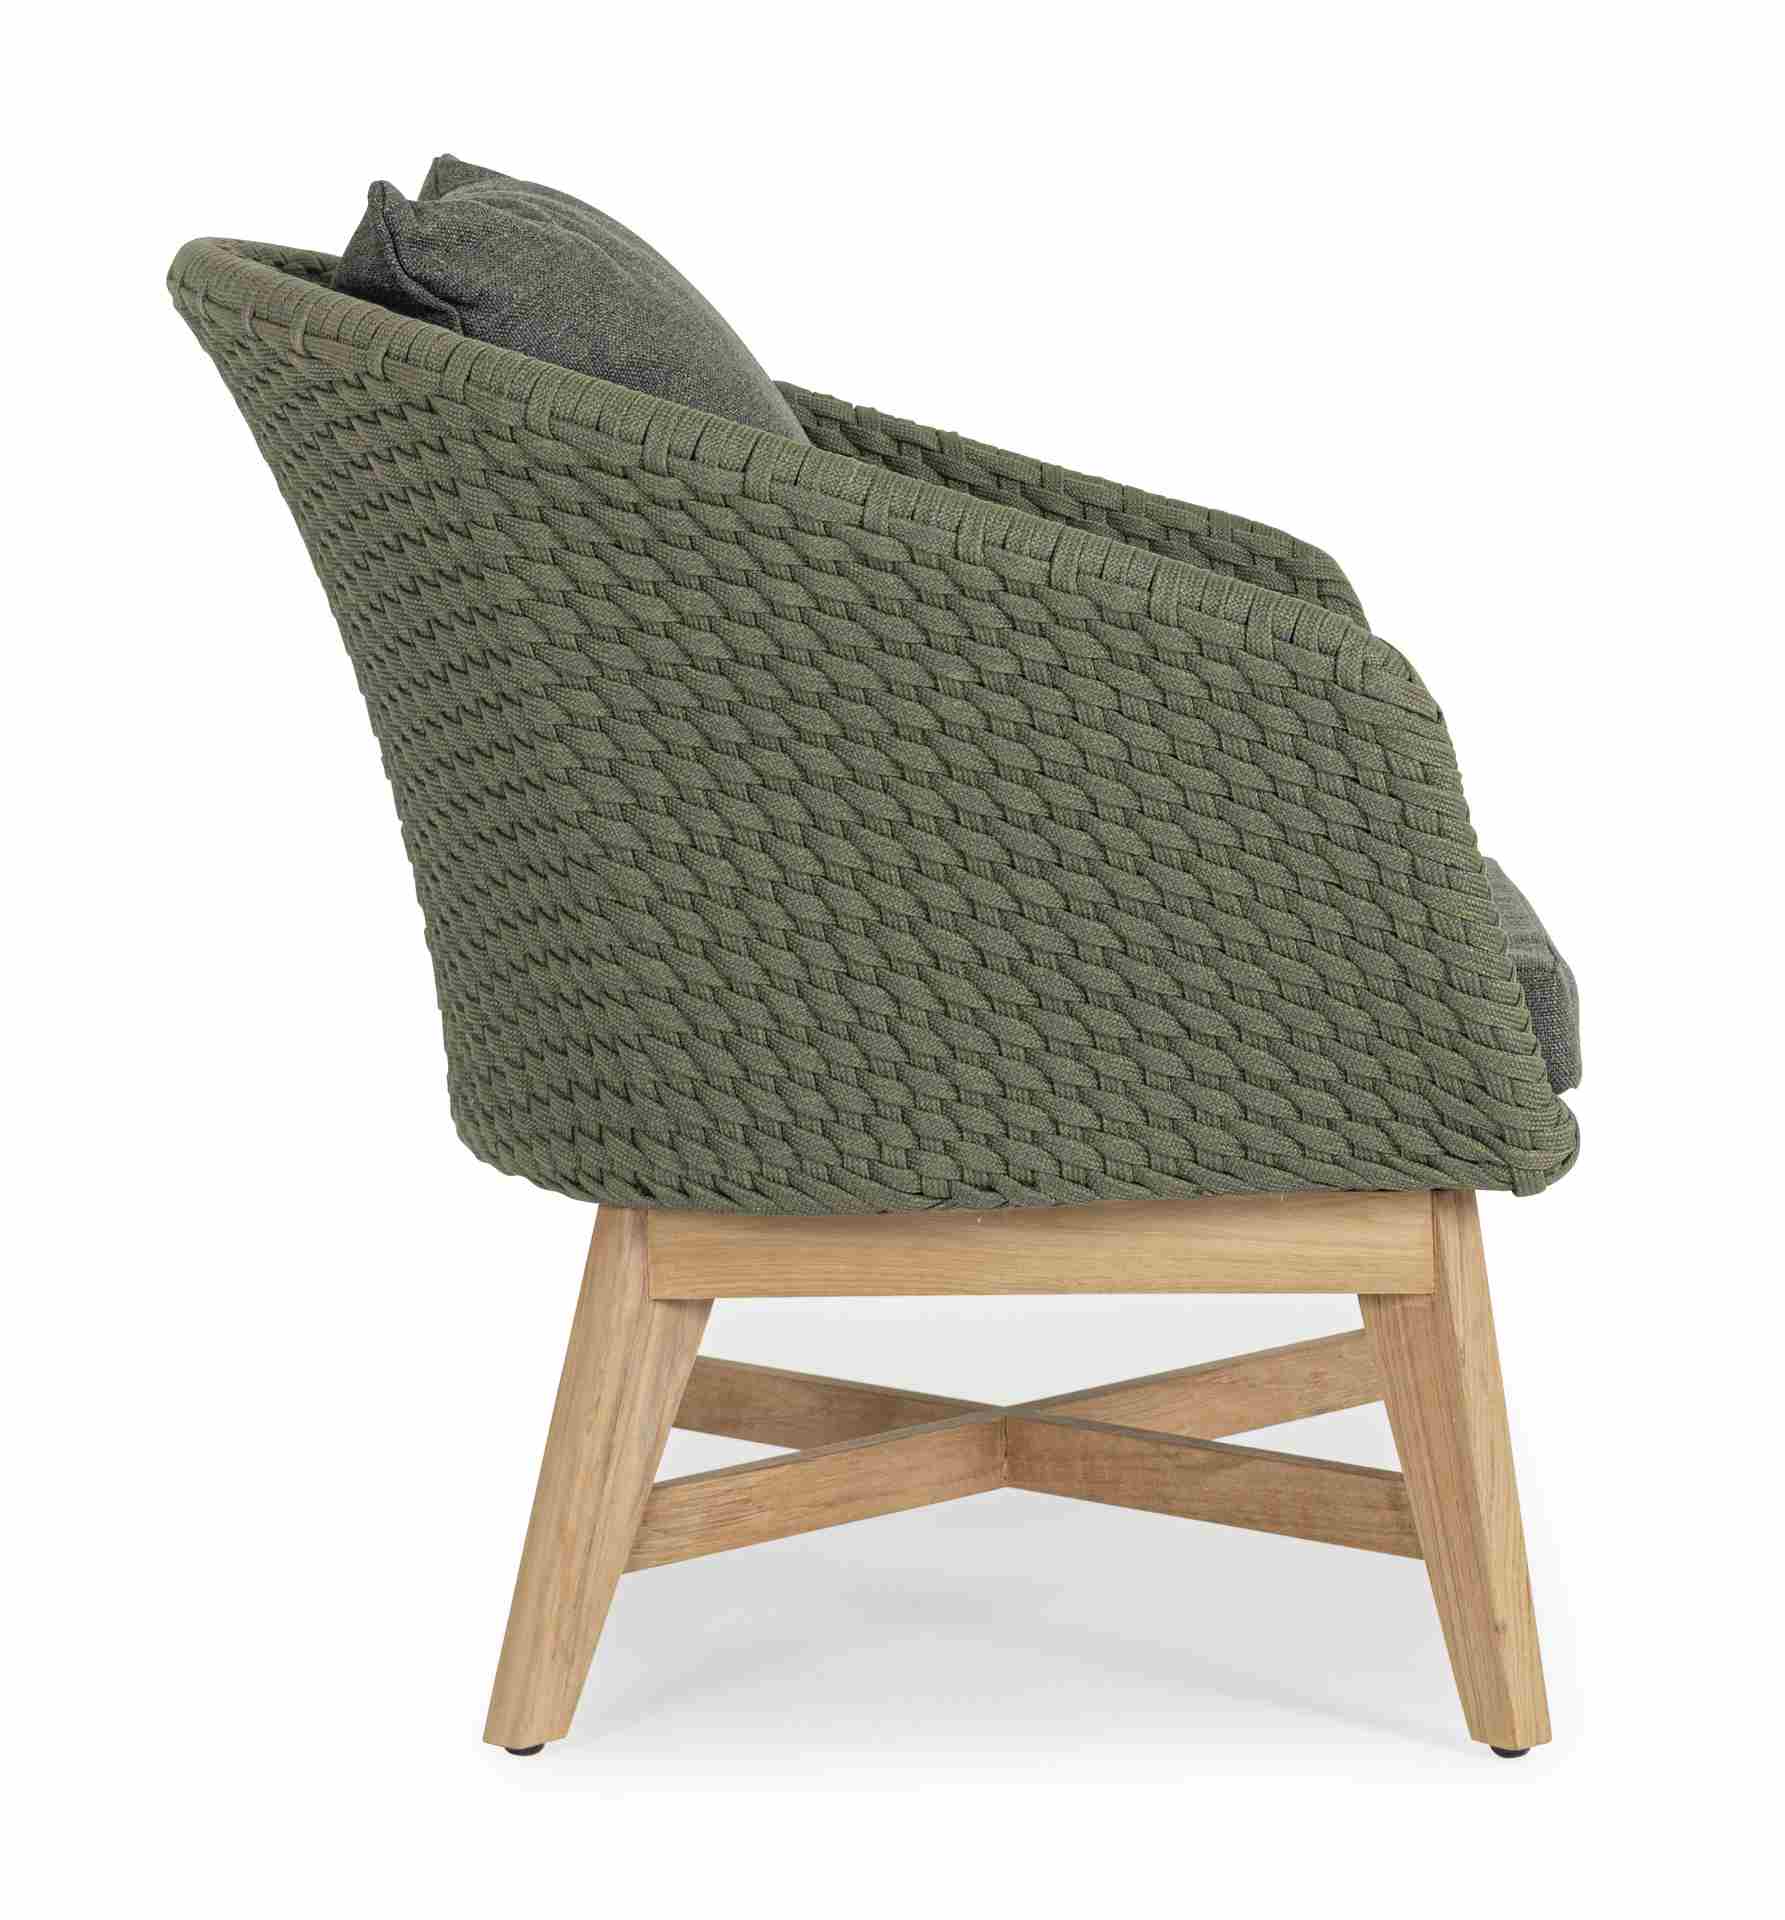 Der Gartensessel Coachella überzeugt mit seinem modernen Design. Gefertigt wurde er aus Olefin-Stoff, welcher einen grünen Farbton besitzt. Das Gestell ist aus Teakholz und hat eine natürliche Farbe. Der Sessel verfügt über eine Sitzhöhe von 39 cm und ist